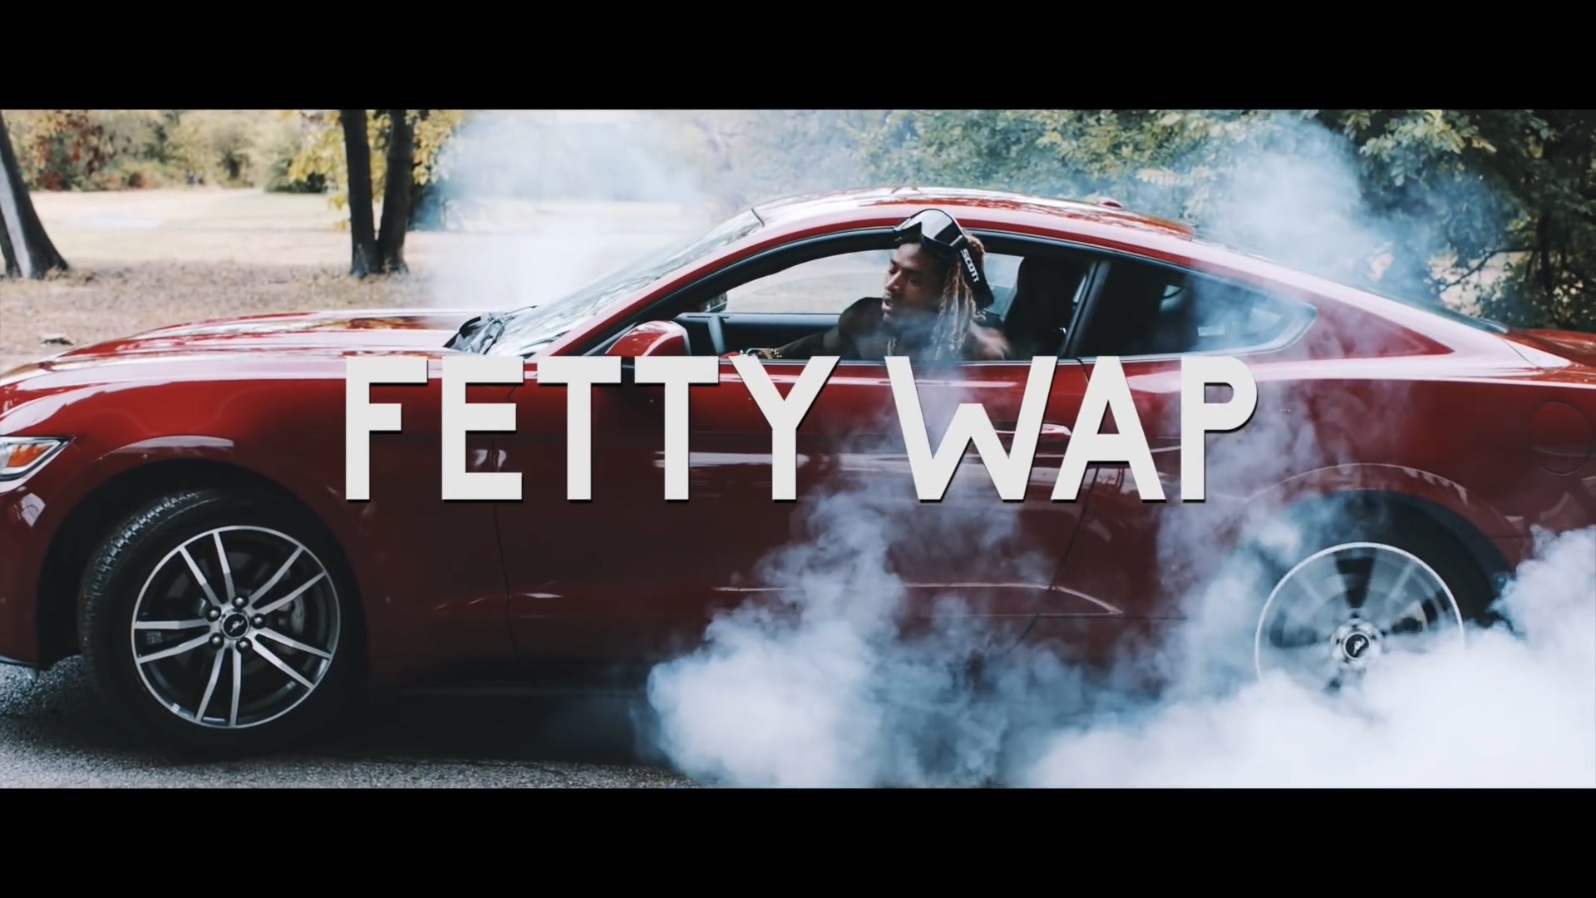 Fetty Wap feat. Monty - My Way - 1080p